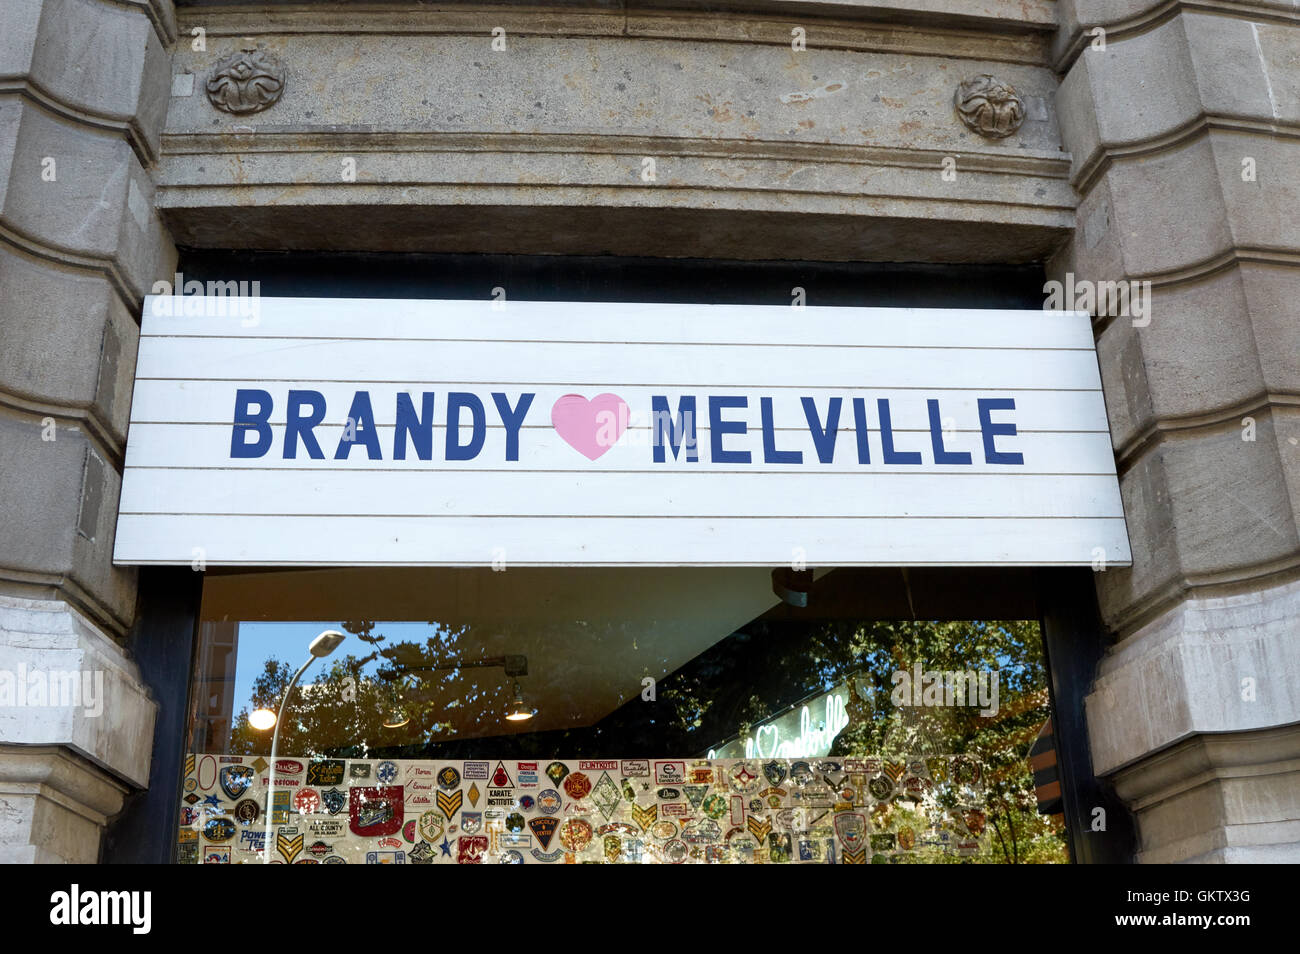 Brandy Melville-Shop-Logo am Passeig de Gracia, Barcelnoa, Catalonai, Spanien Stockfoto